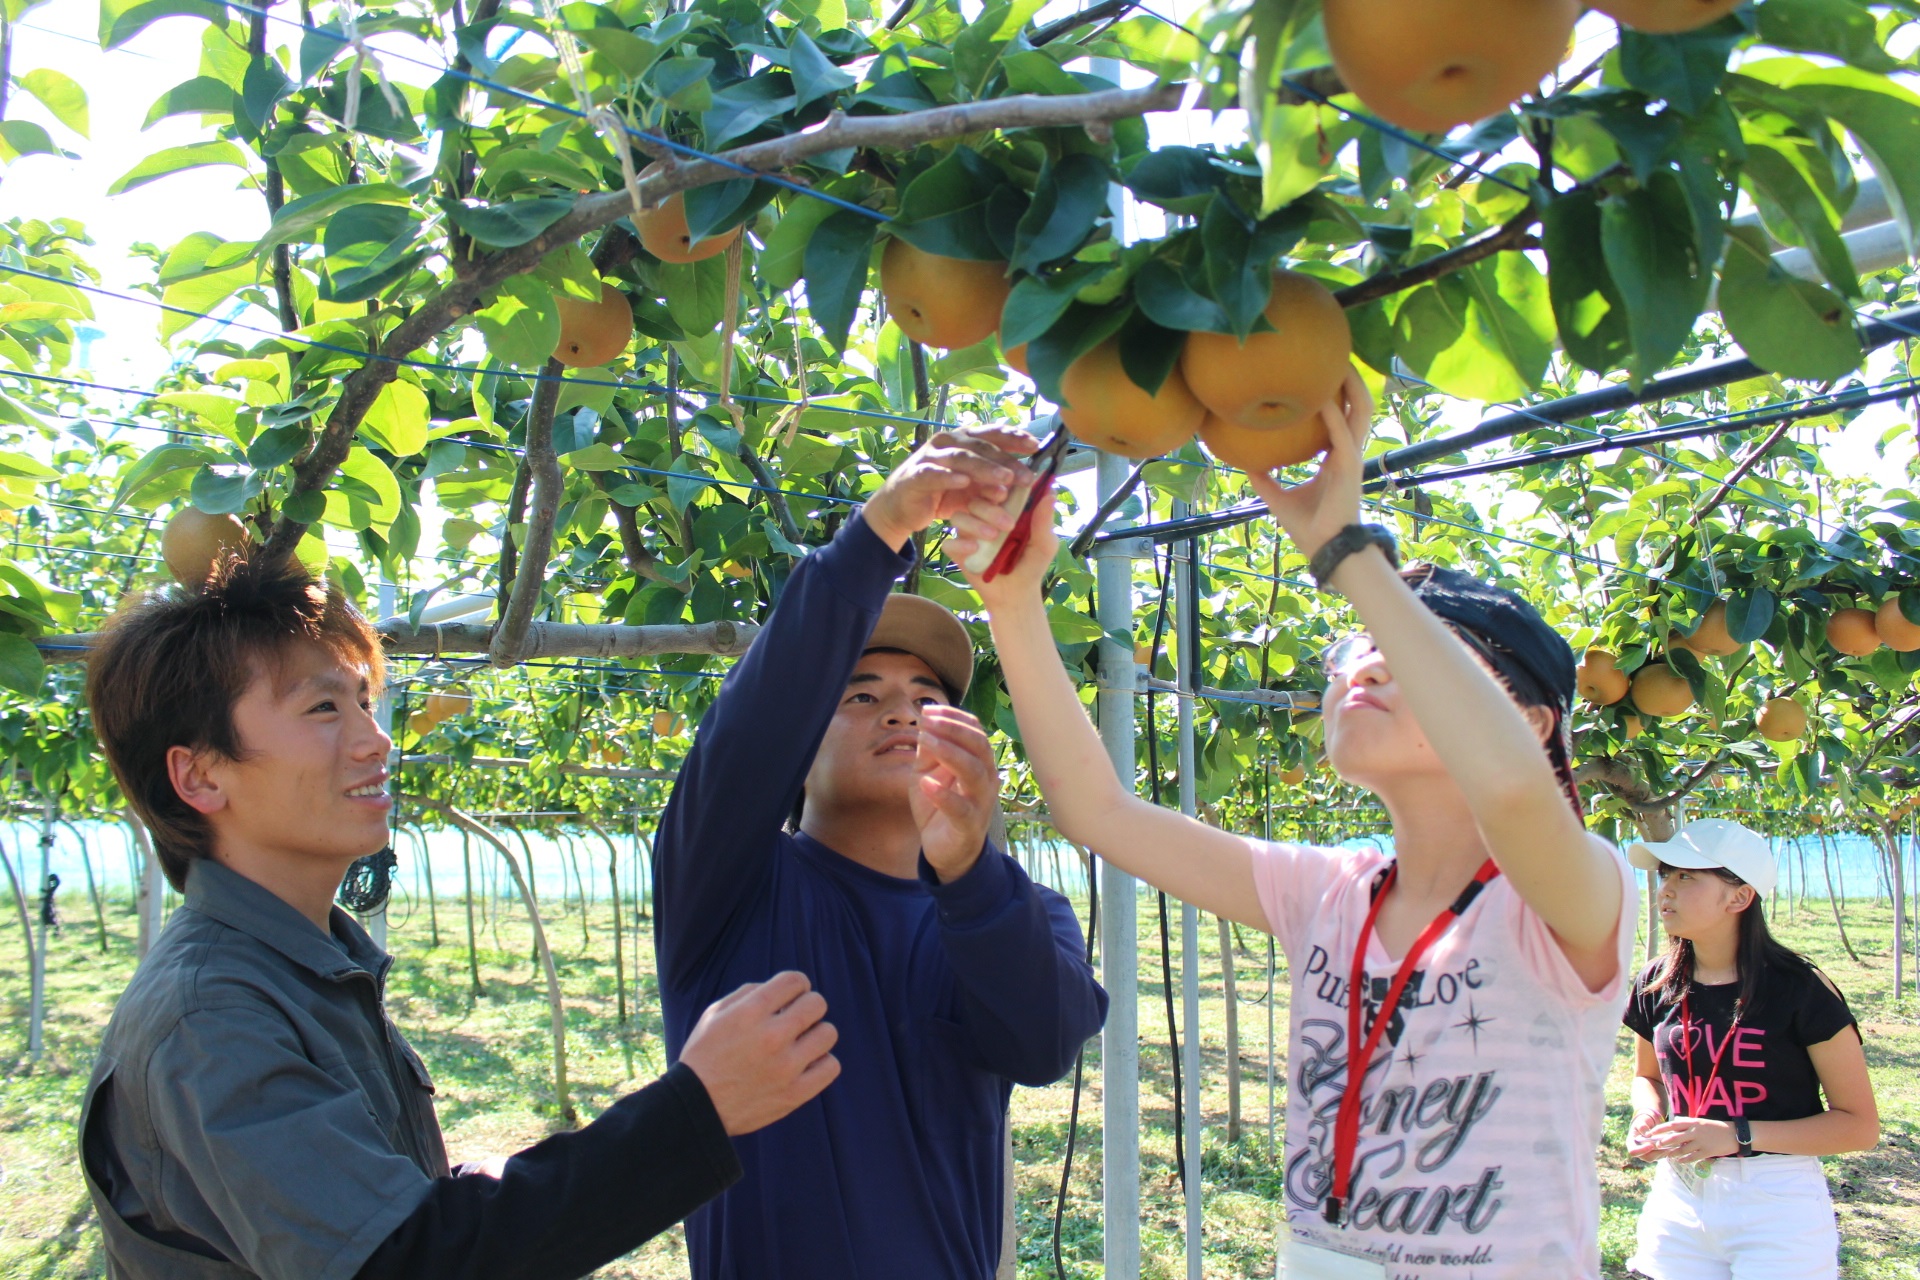 みよし梨収穫体験をしている2人の男の子たちの写真